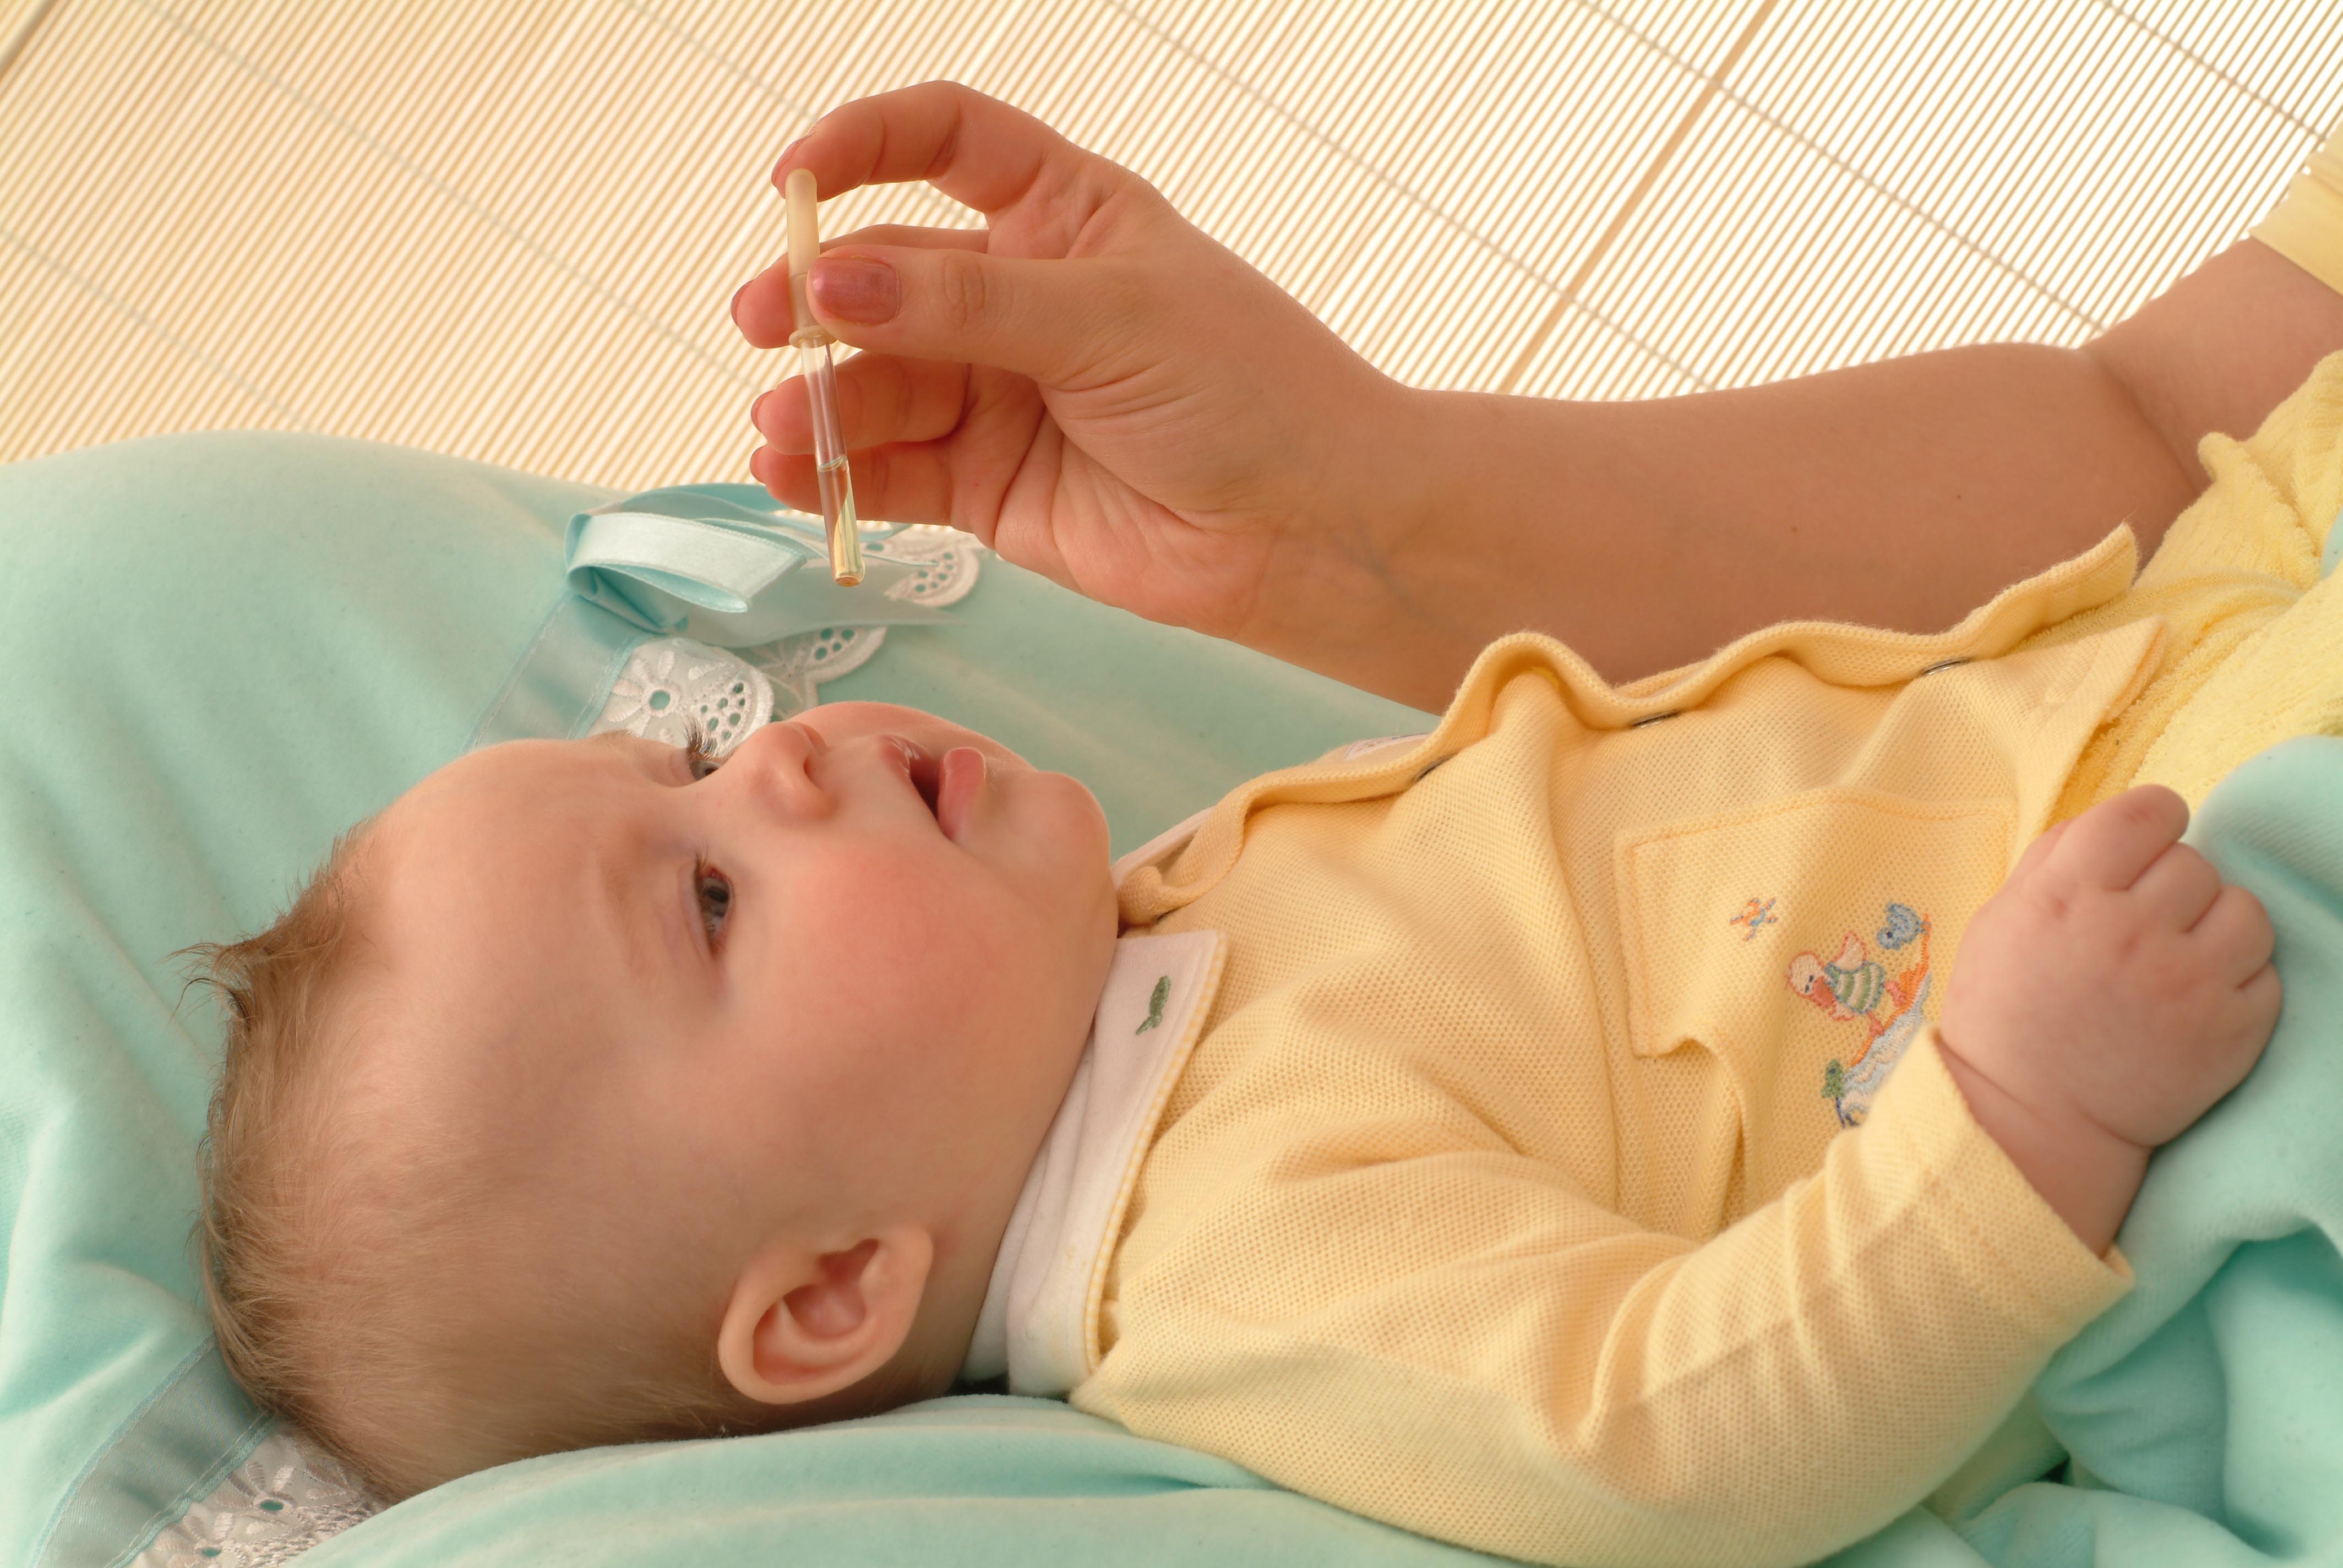 Можно ребенку нос промыть фурацилином